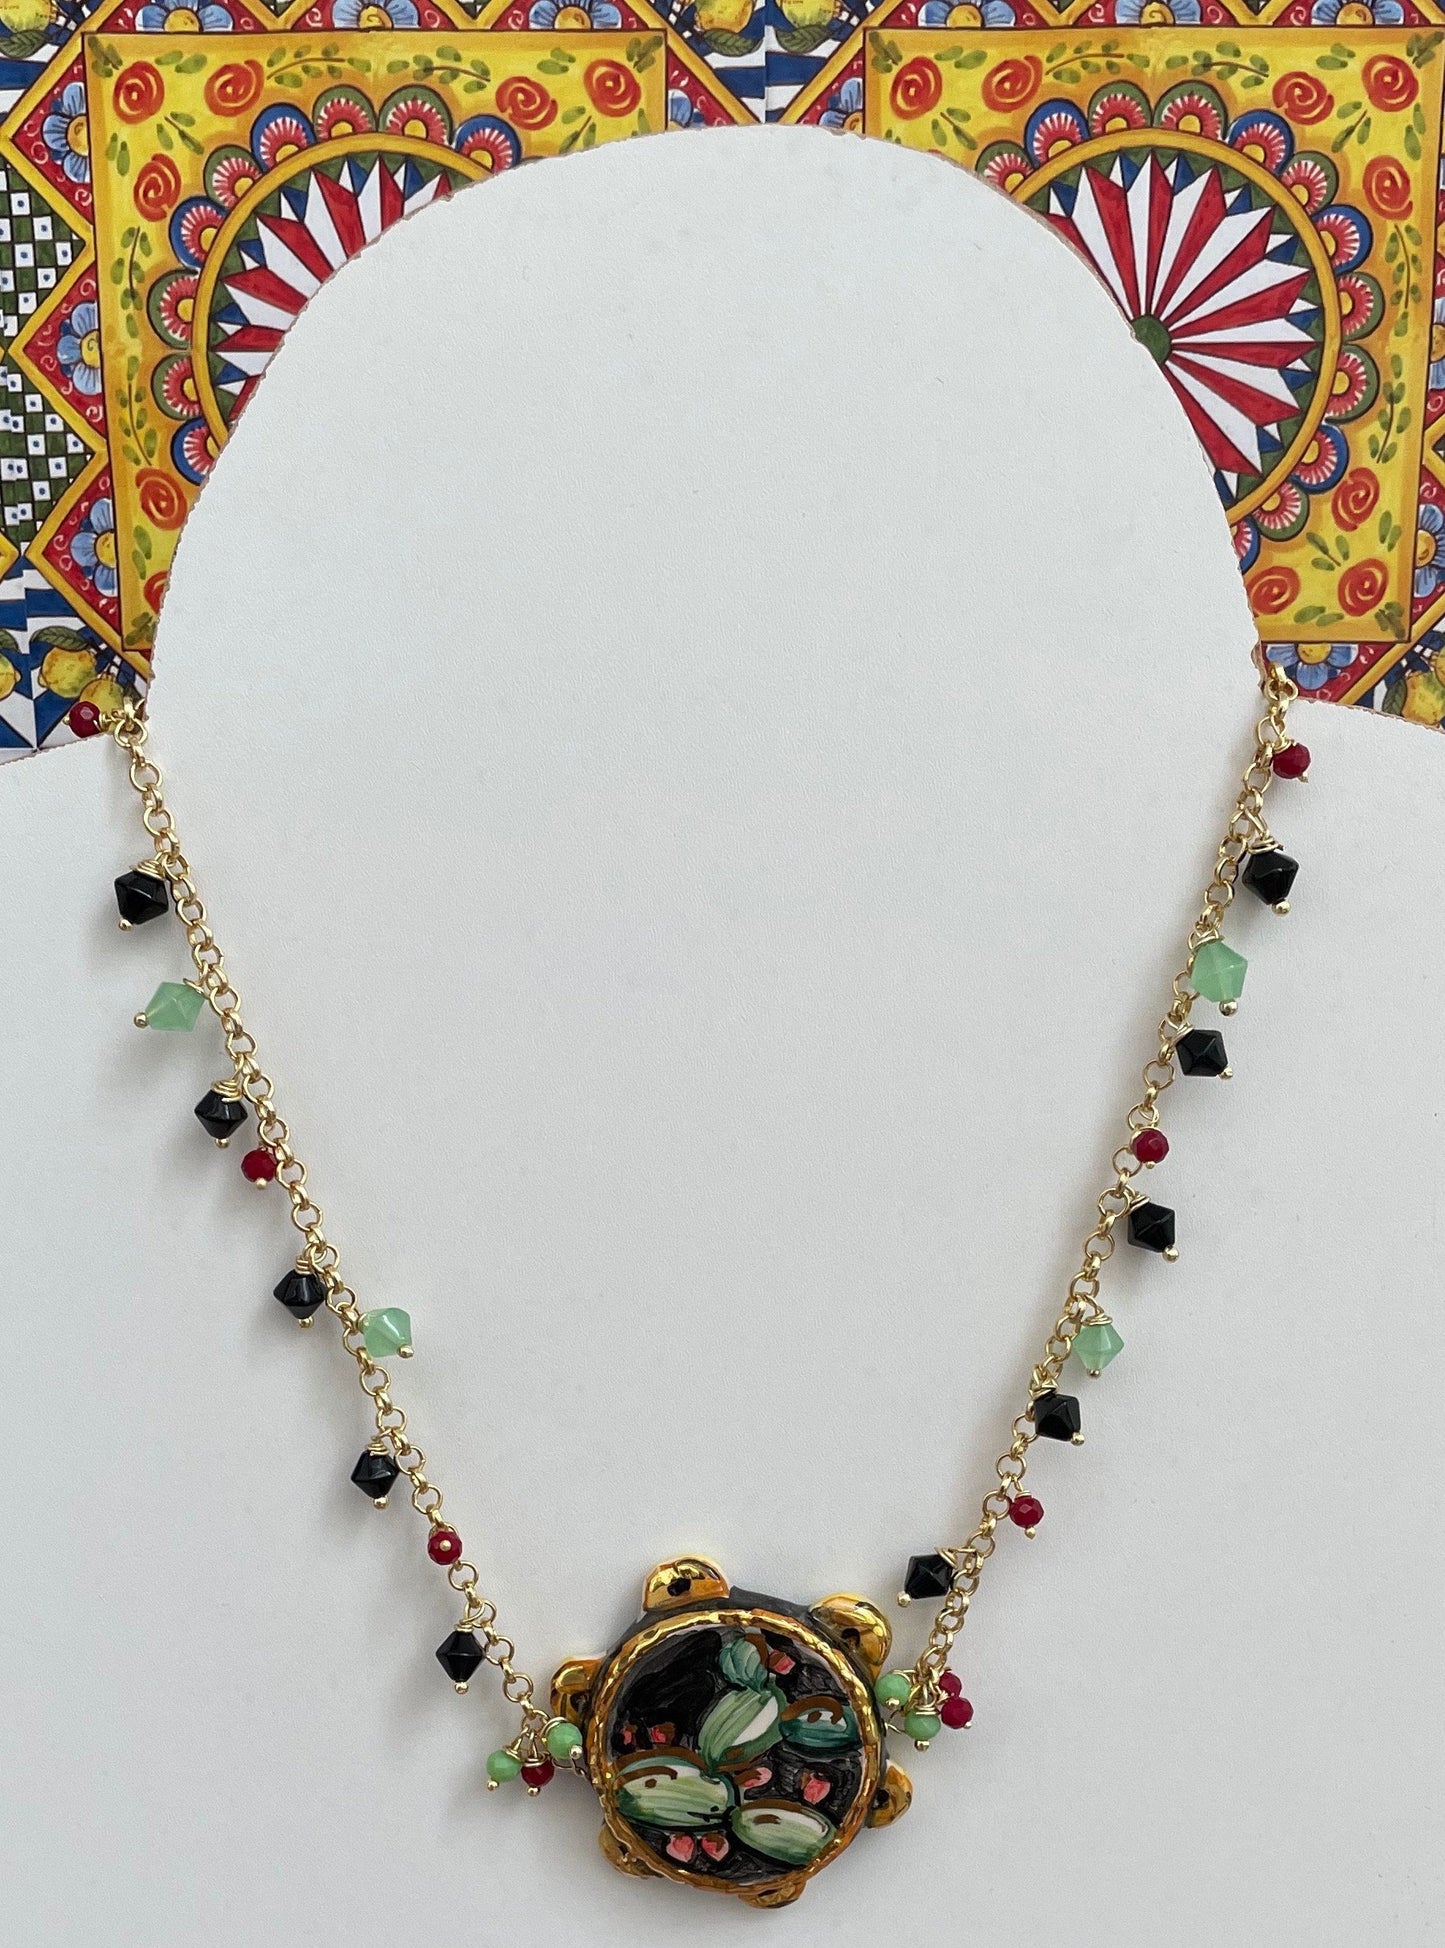 Collana girocollo, ottone, tamburello in ceramica di Caltagirone, perle di cristallo di colore misto.ç